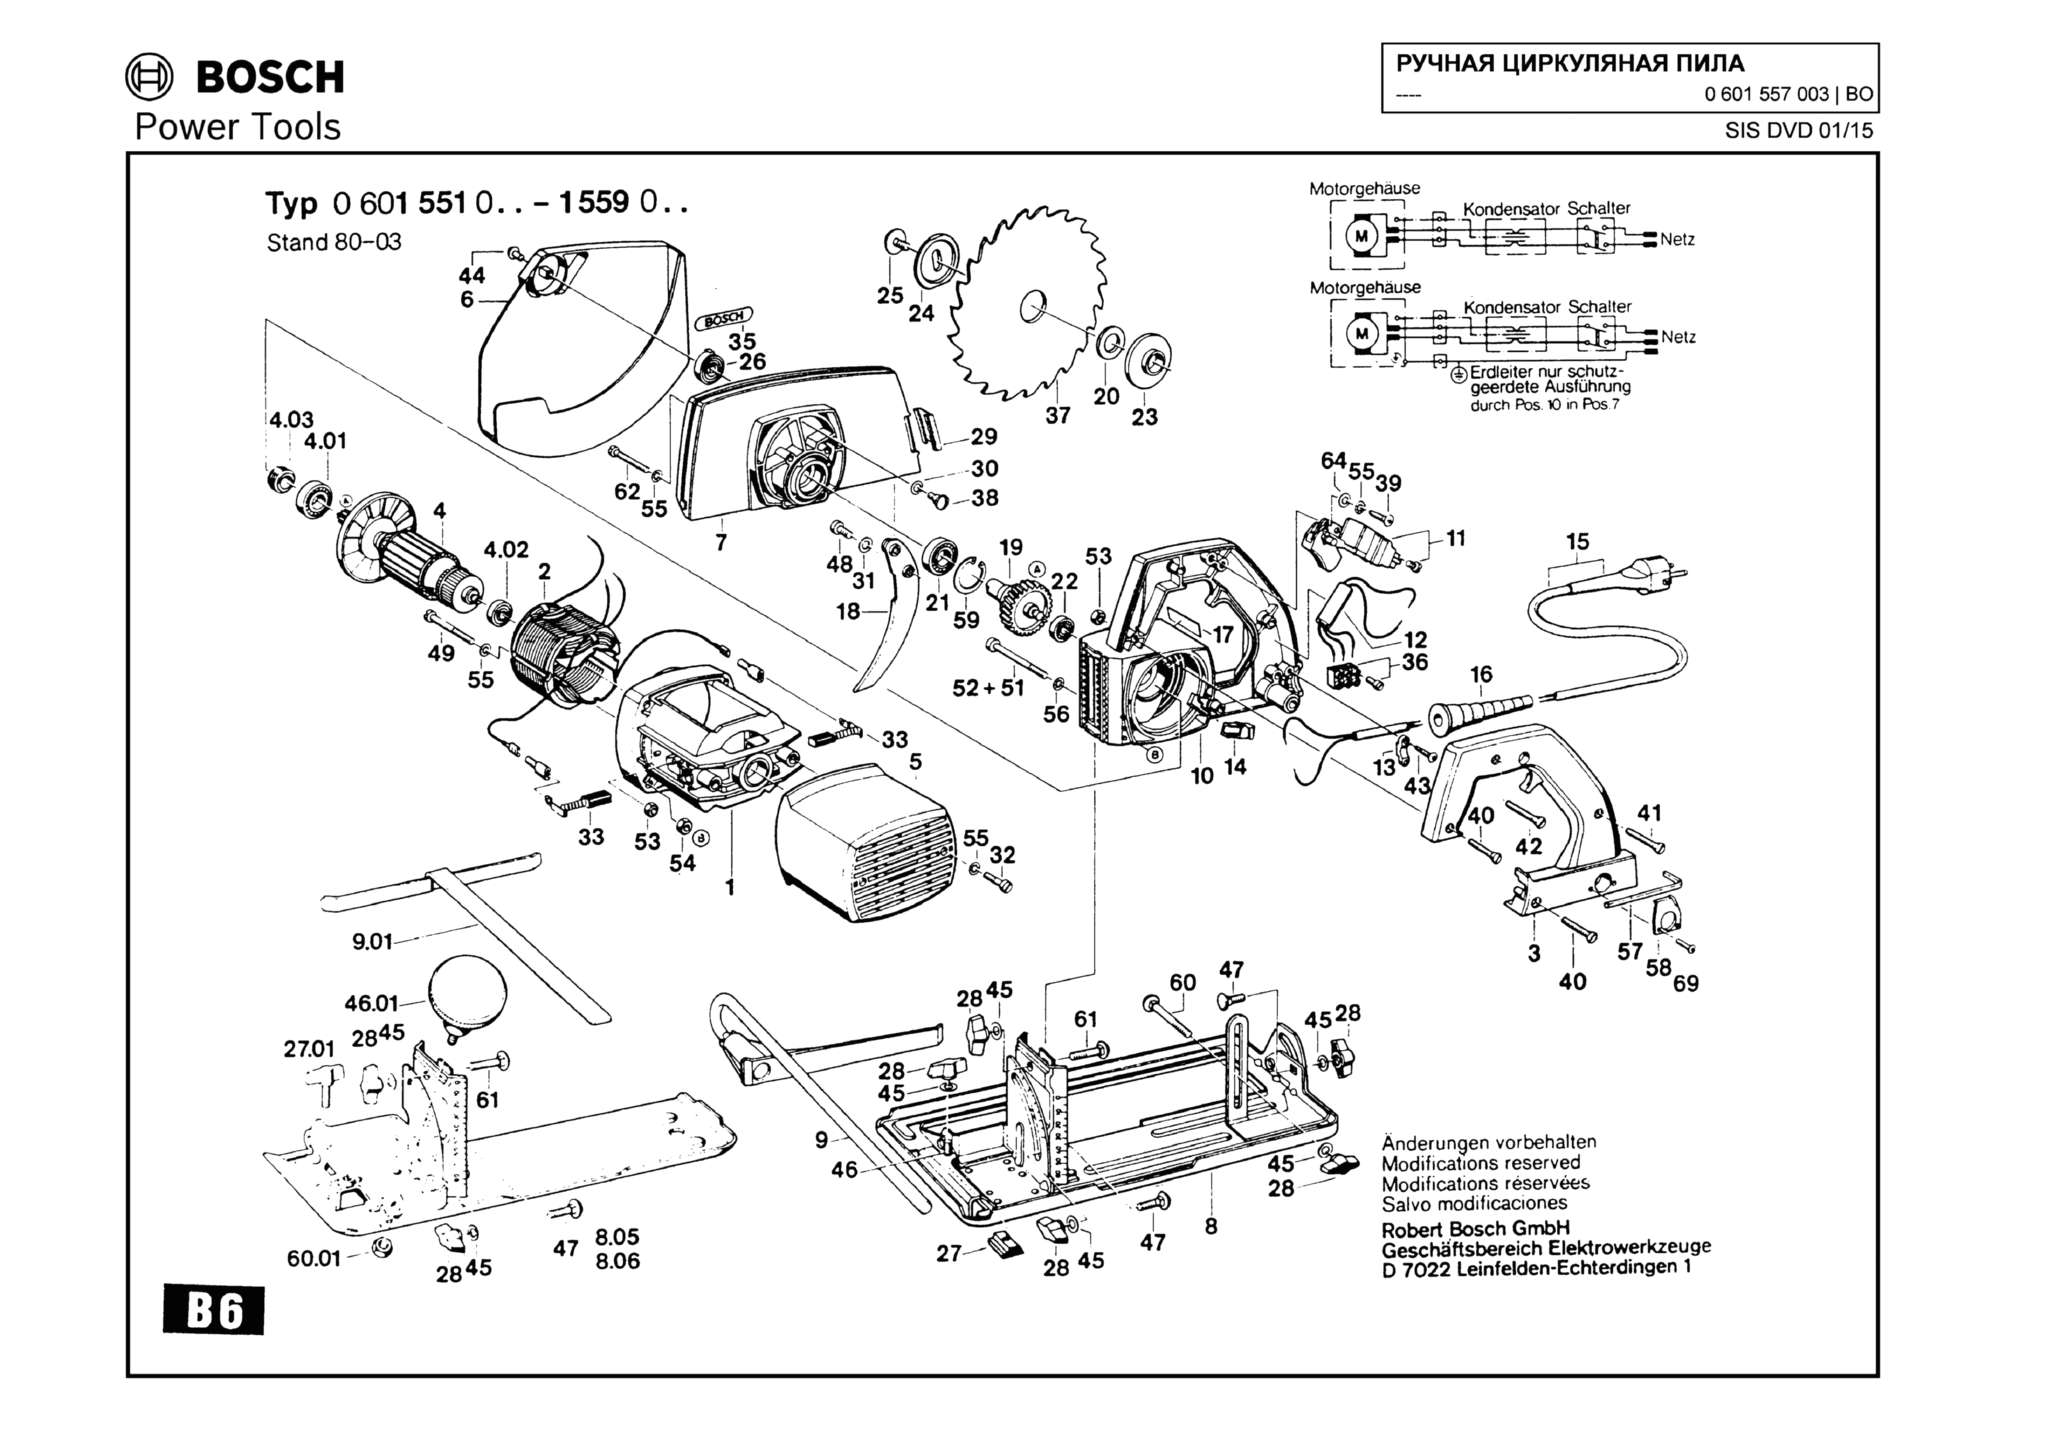 Запчасти, схема и деталировка Bosch (ТИП 0601557003)